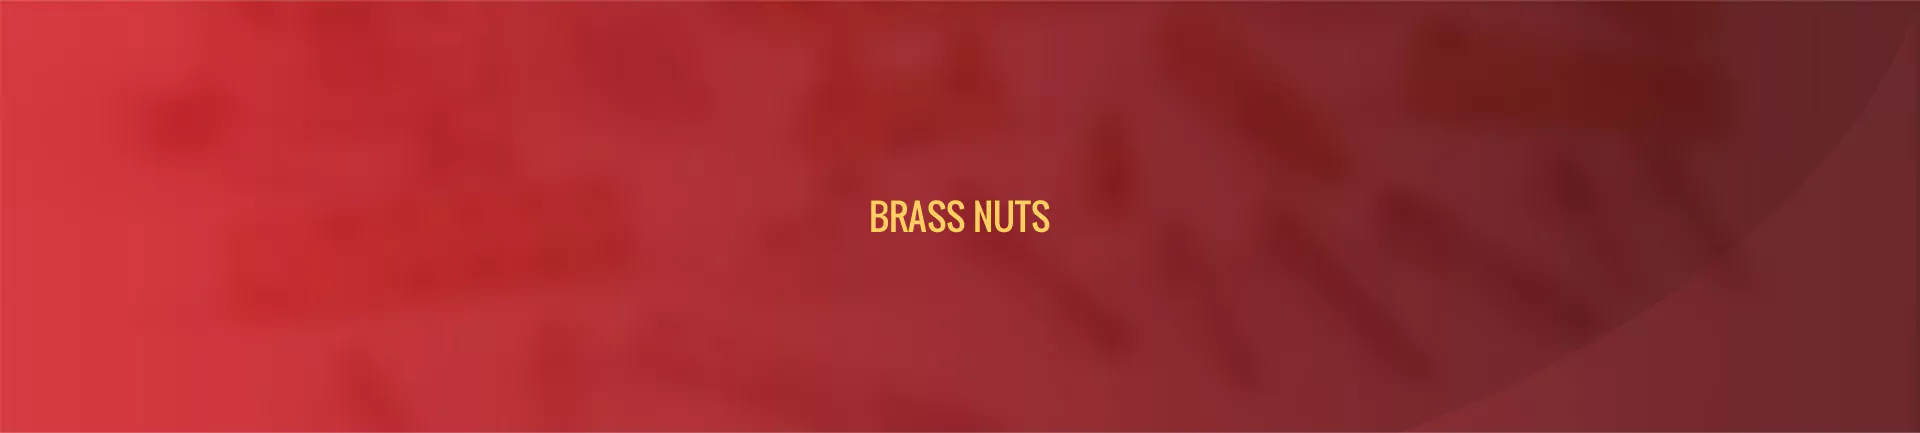 brass_nut-banner